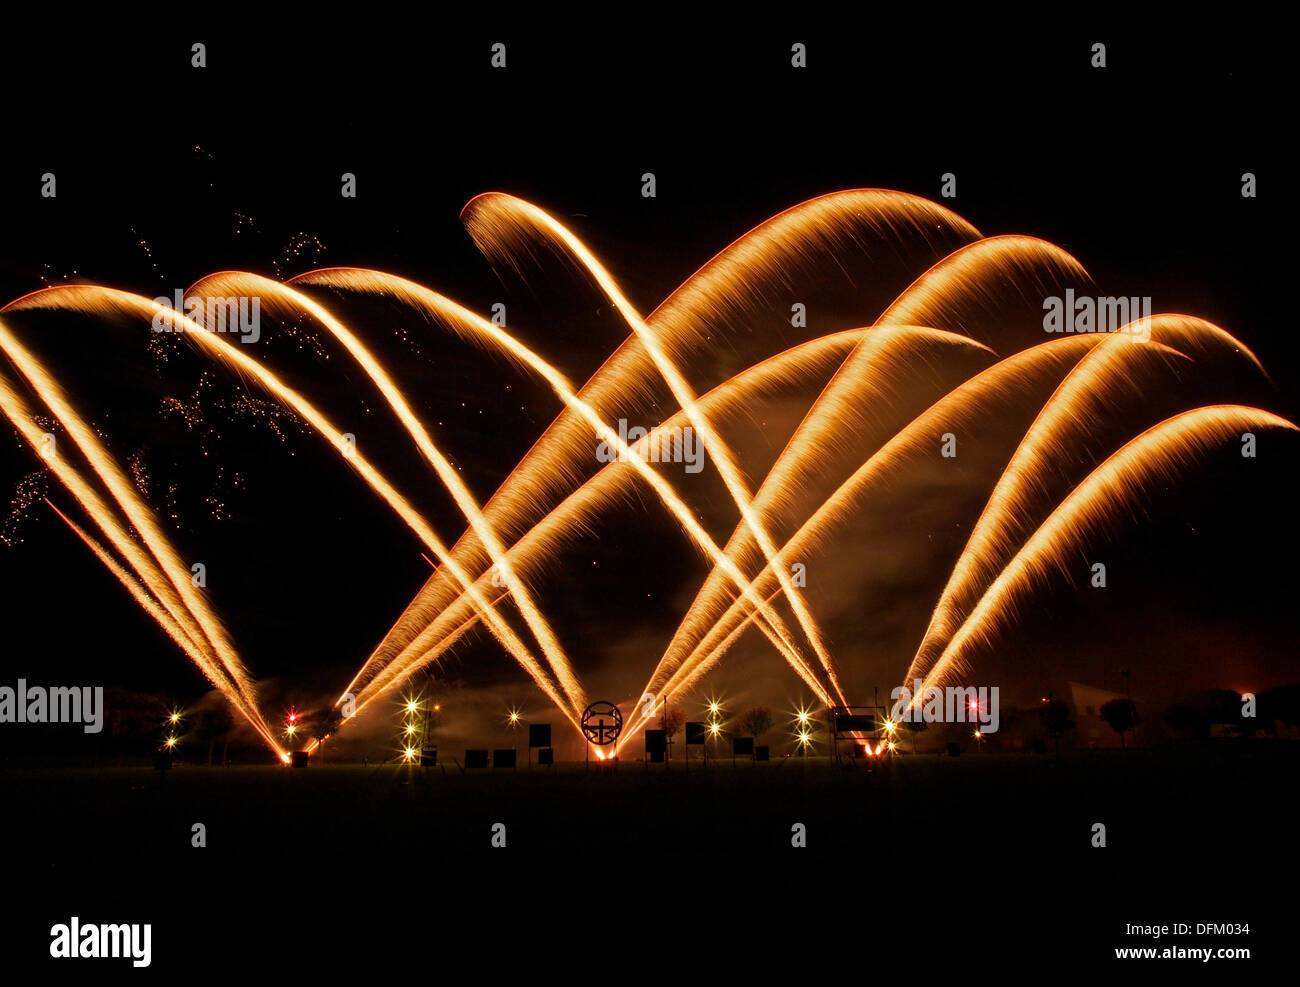 Southport, England. 6. Oktober 2013. Feuerwerk-Eintrag aus Sicherung Feuerwerk für die britische musikalischen Feuerwerk-Meisterschaft. Bildnachweis: Sue Burton/Alamy Live-Nachrichten Stockfoto